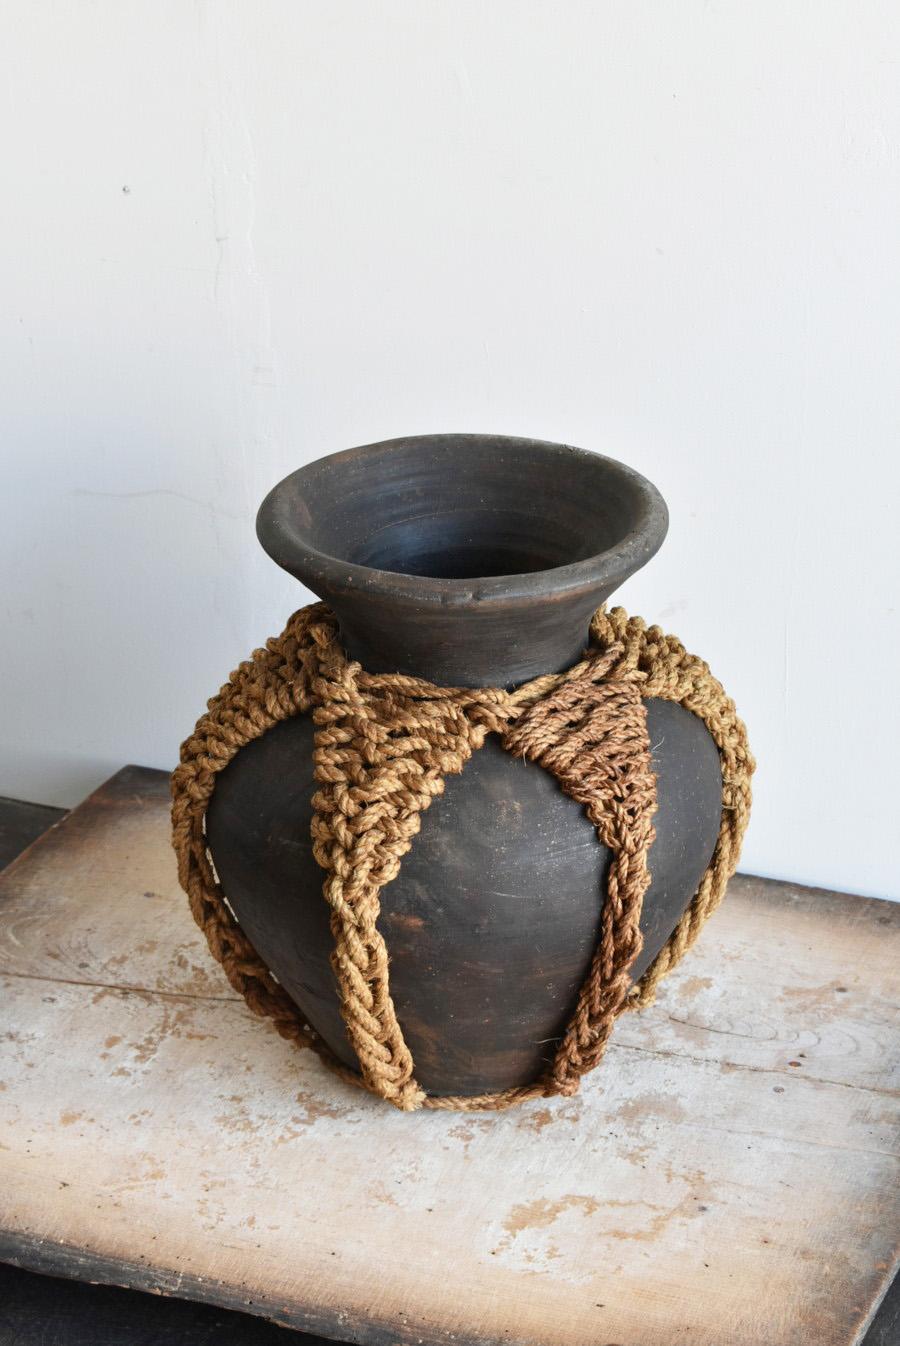 Hand-Crafted Korean Old Pottery Black Jar / Mid-20th Century / Wabi-Sabi Vase